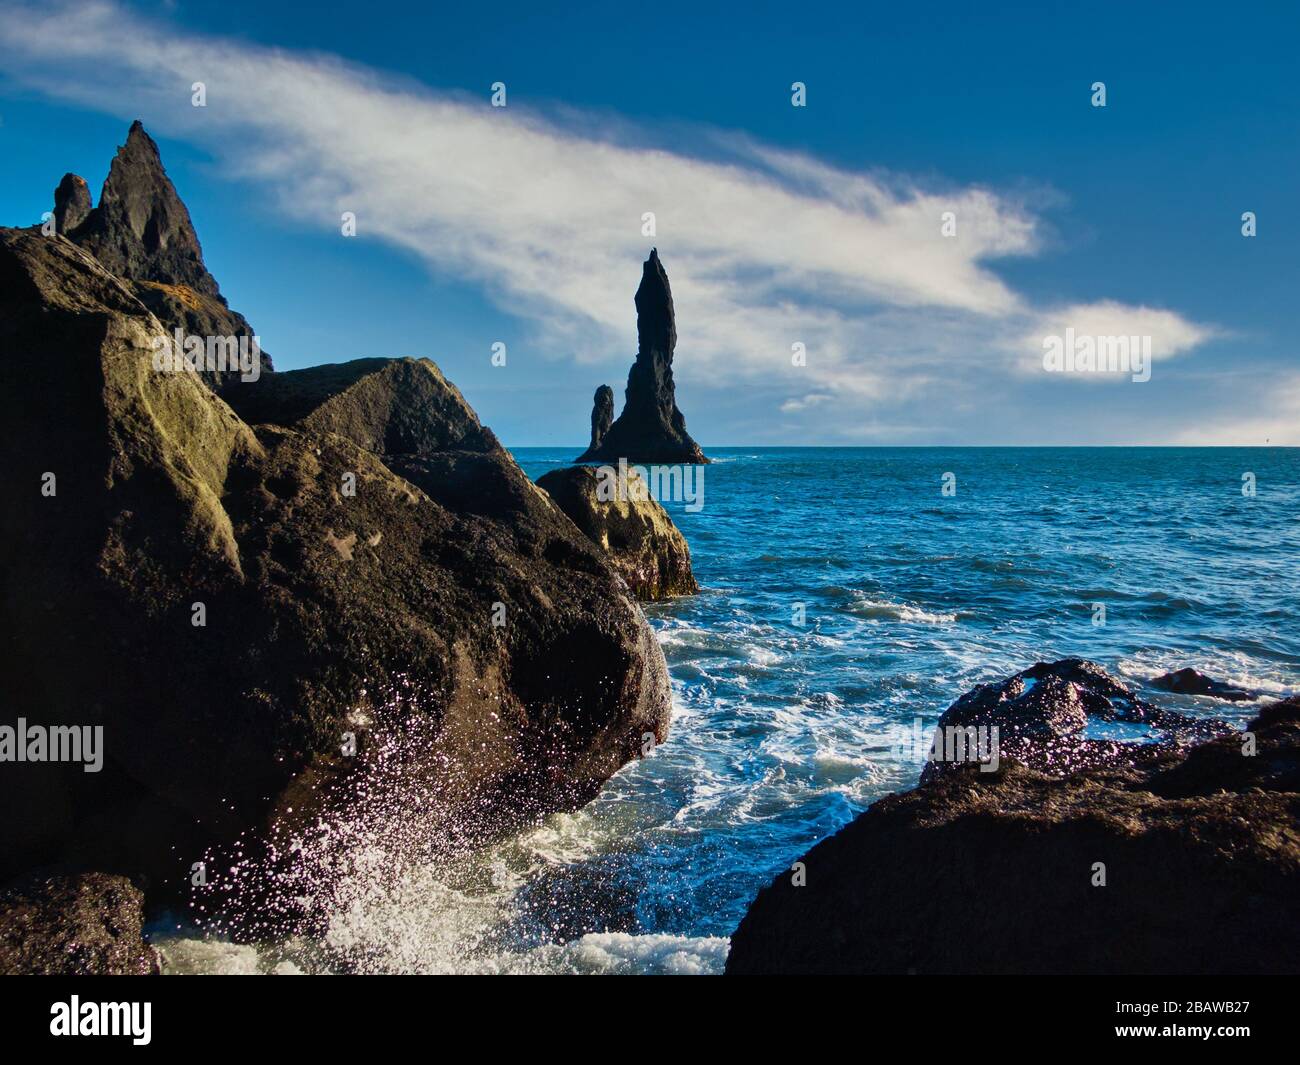 Magnifique paysage marin de formations rocheuses de lave noires Reynisdrangar en Islande. Tempête océan atlantique le jour ensoleillé avec peu de nuages. Pas de personnes, copyspace. Banque D'Images